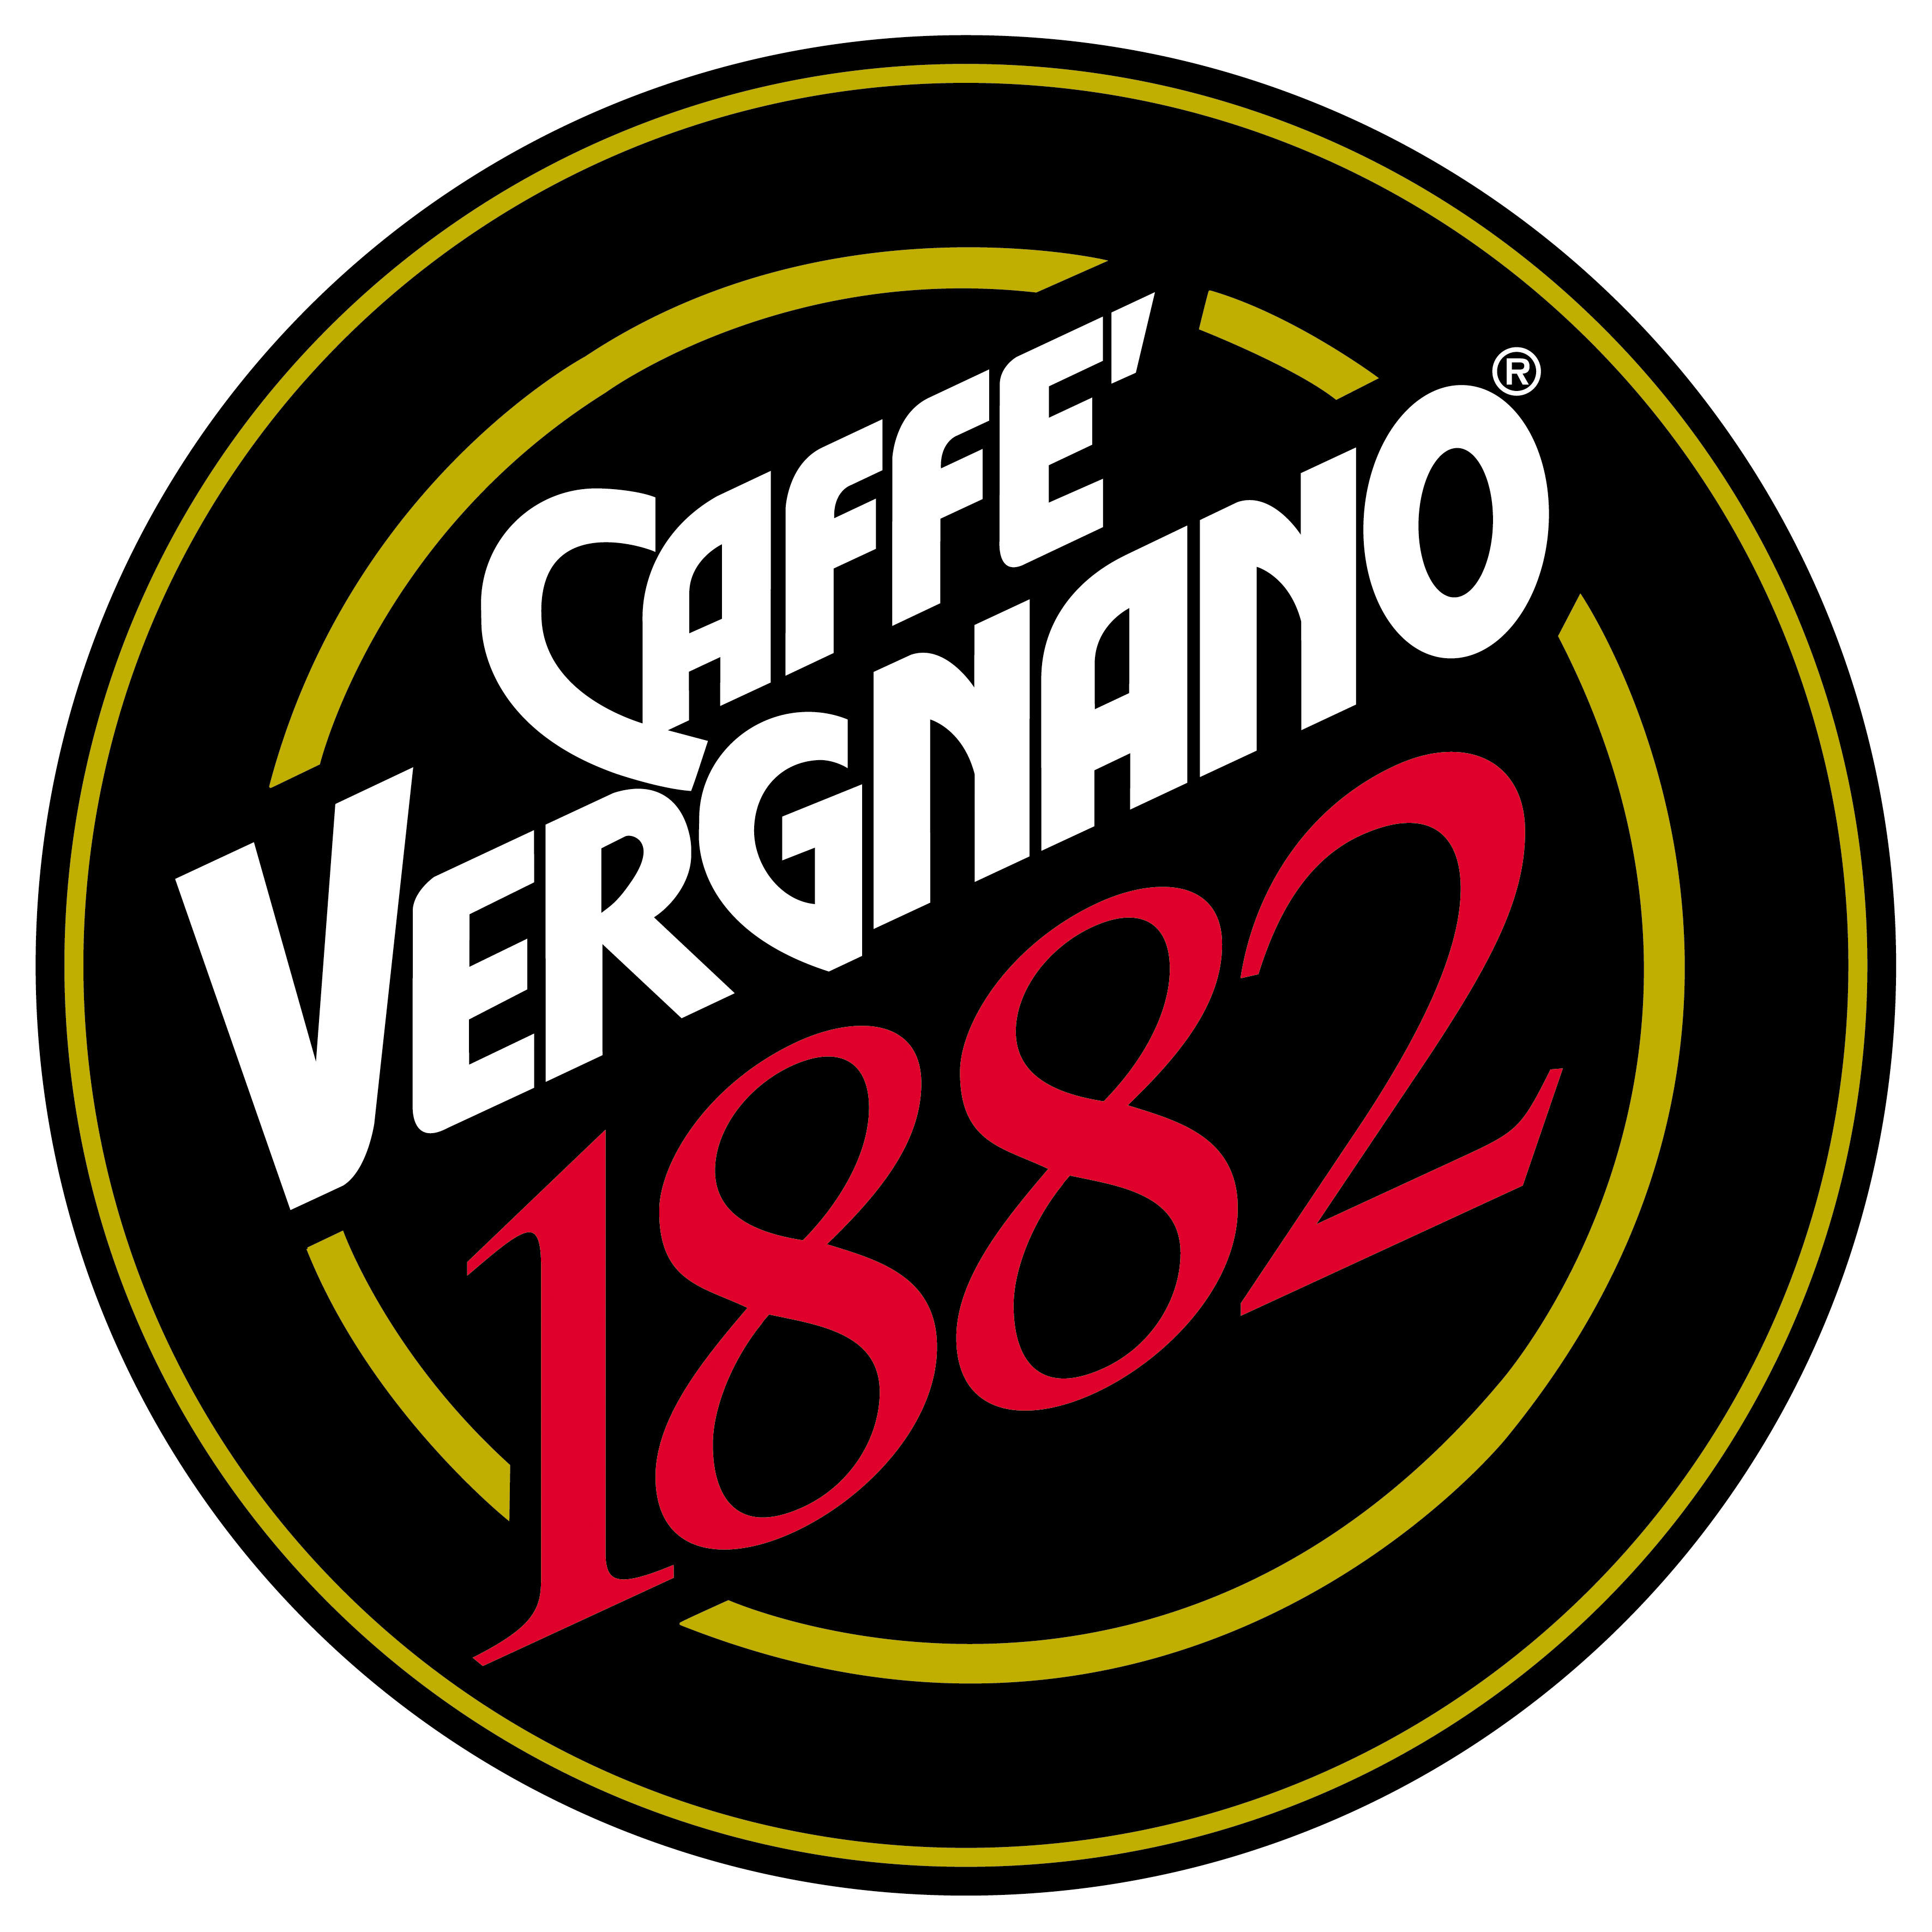 Caffee Vergnano